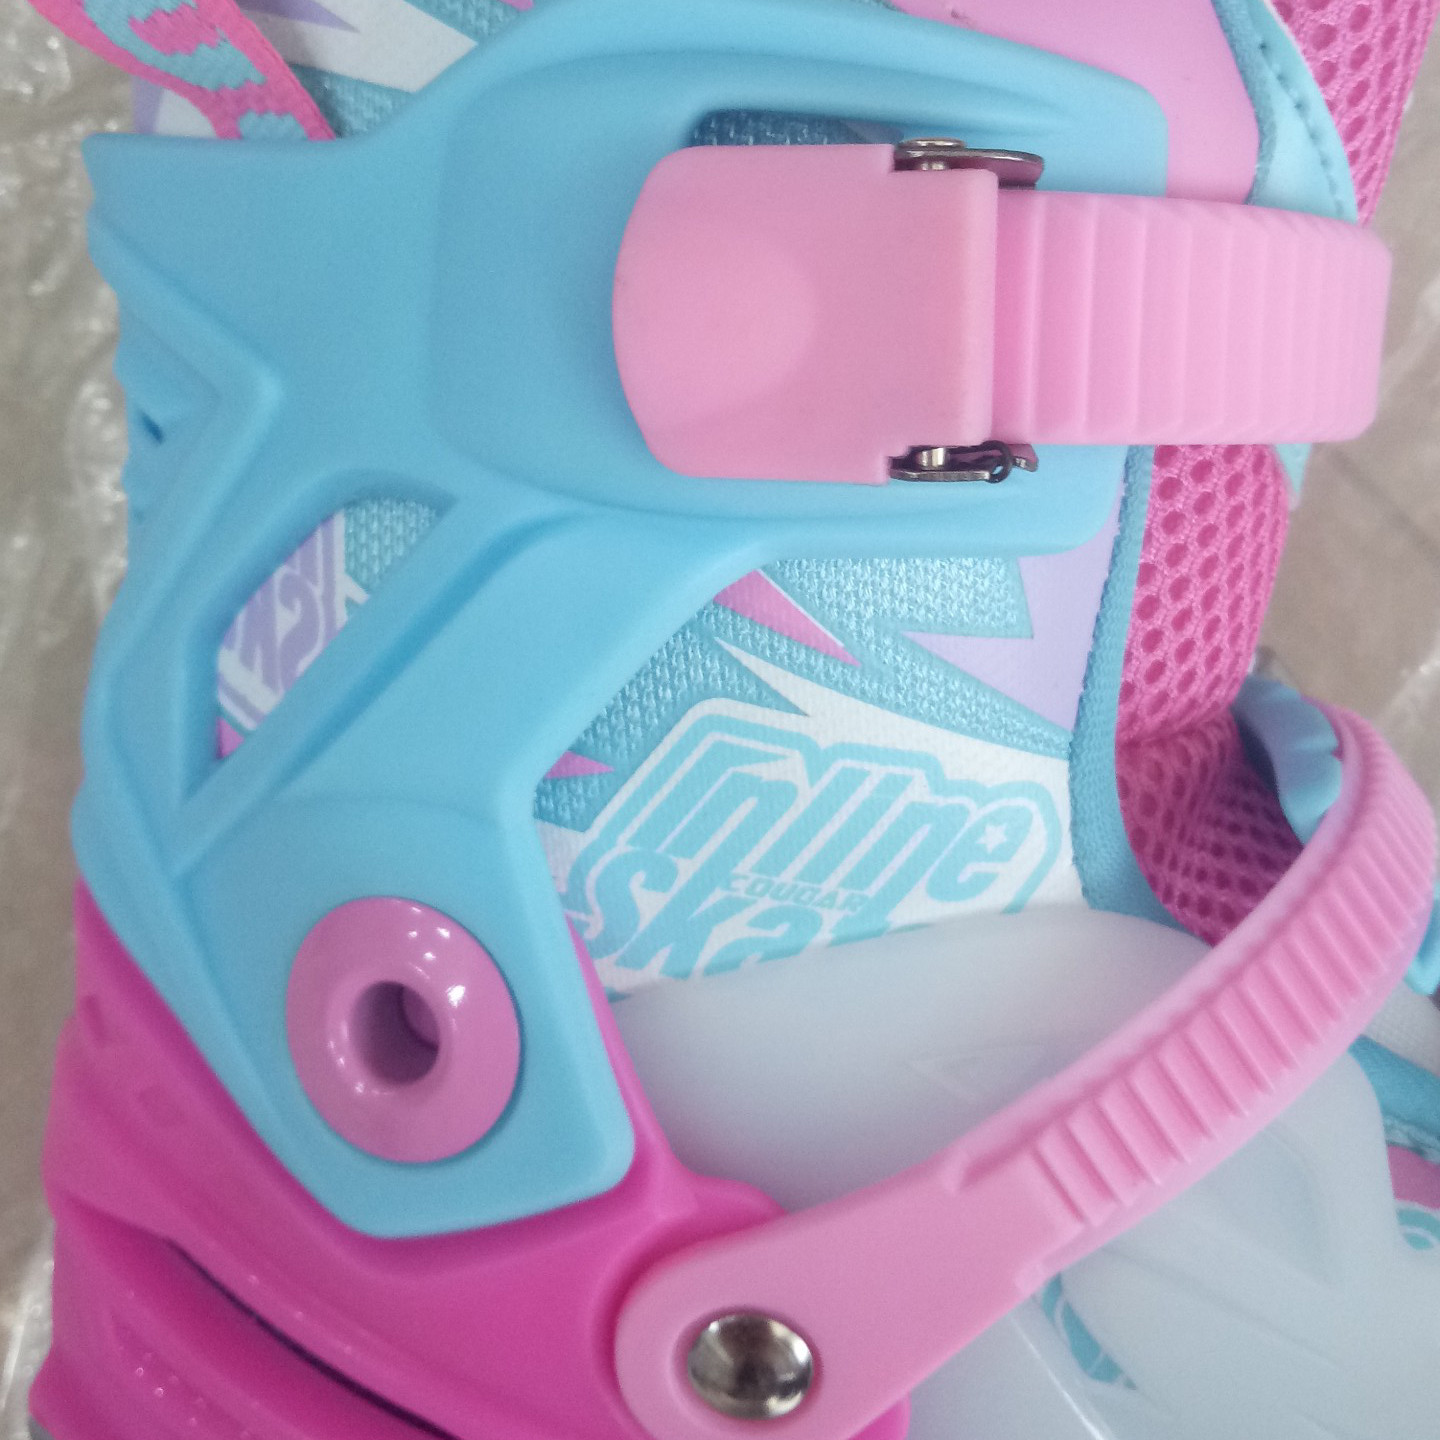 Giày trượt patin trẻ em Cougar 333 hàng chính hãng có thể điều chỉnh size + bánh đèn